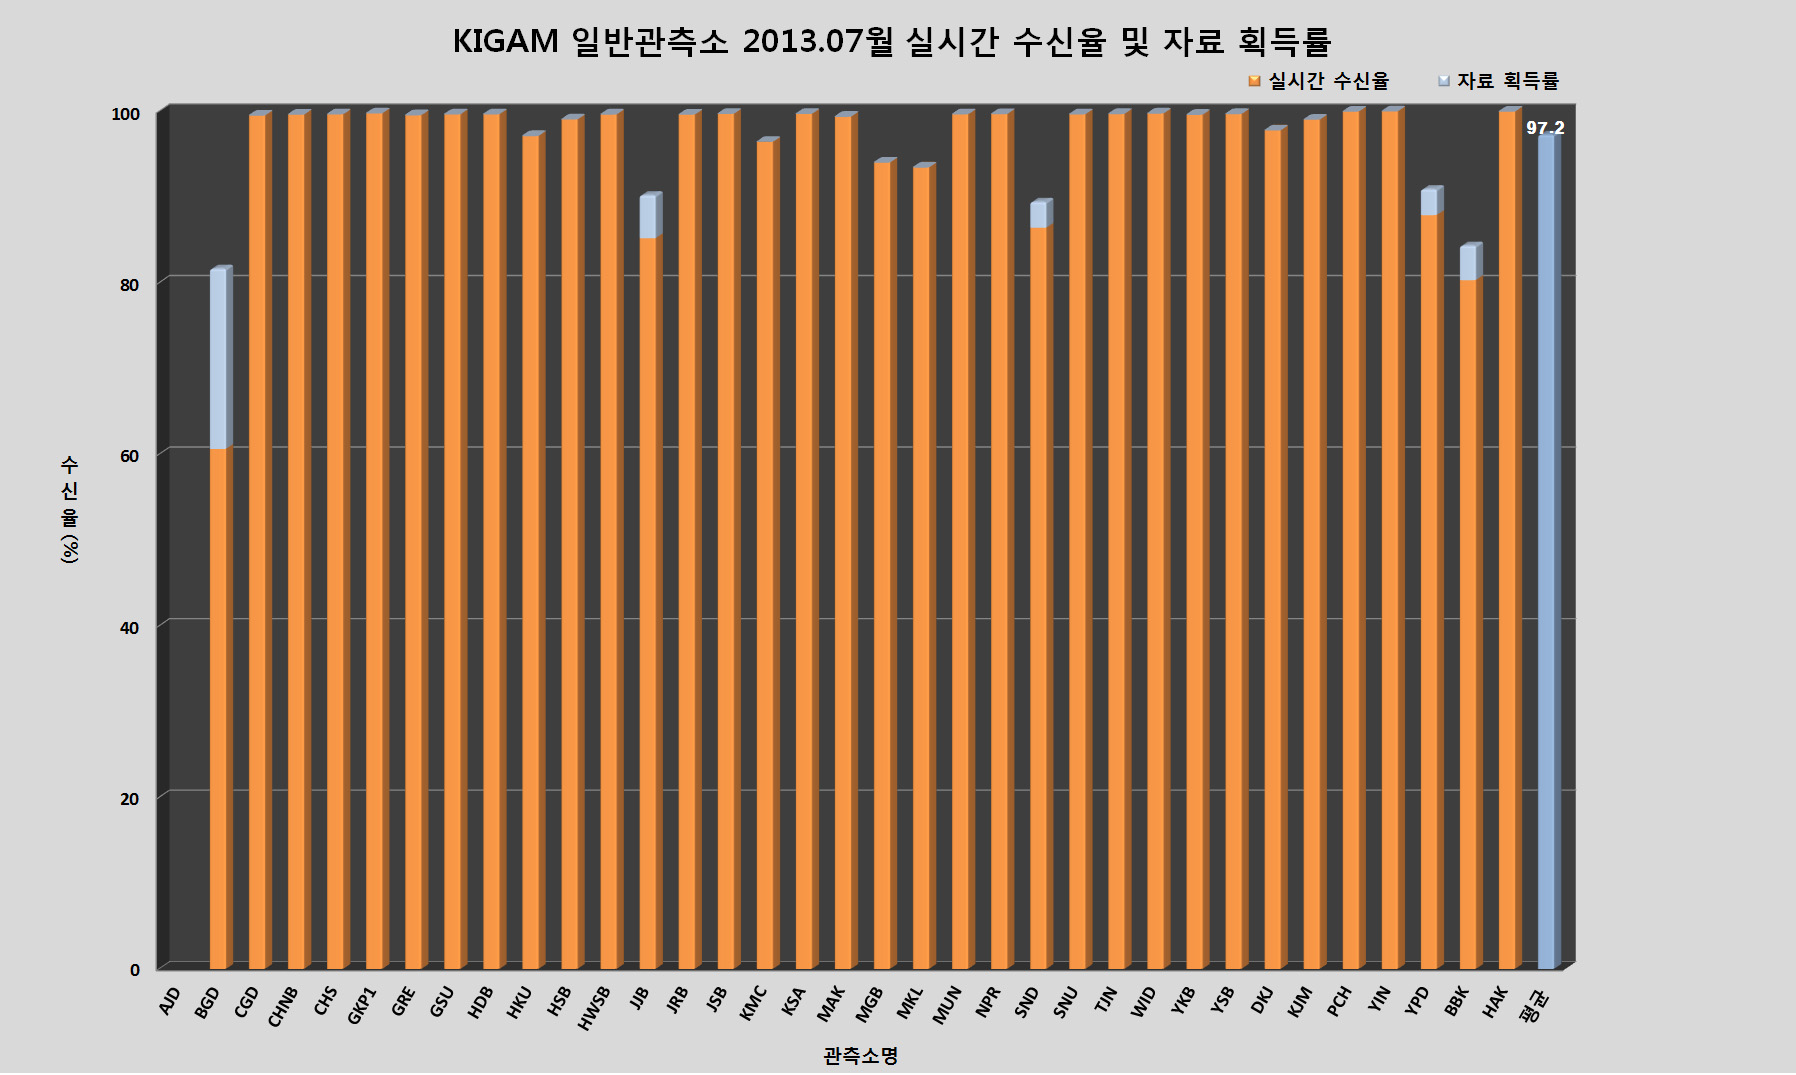 KIGAM 일반관측소 2013년 7월 실시간 수신율 및 자료 획득률